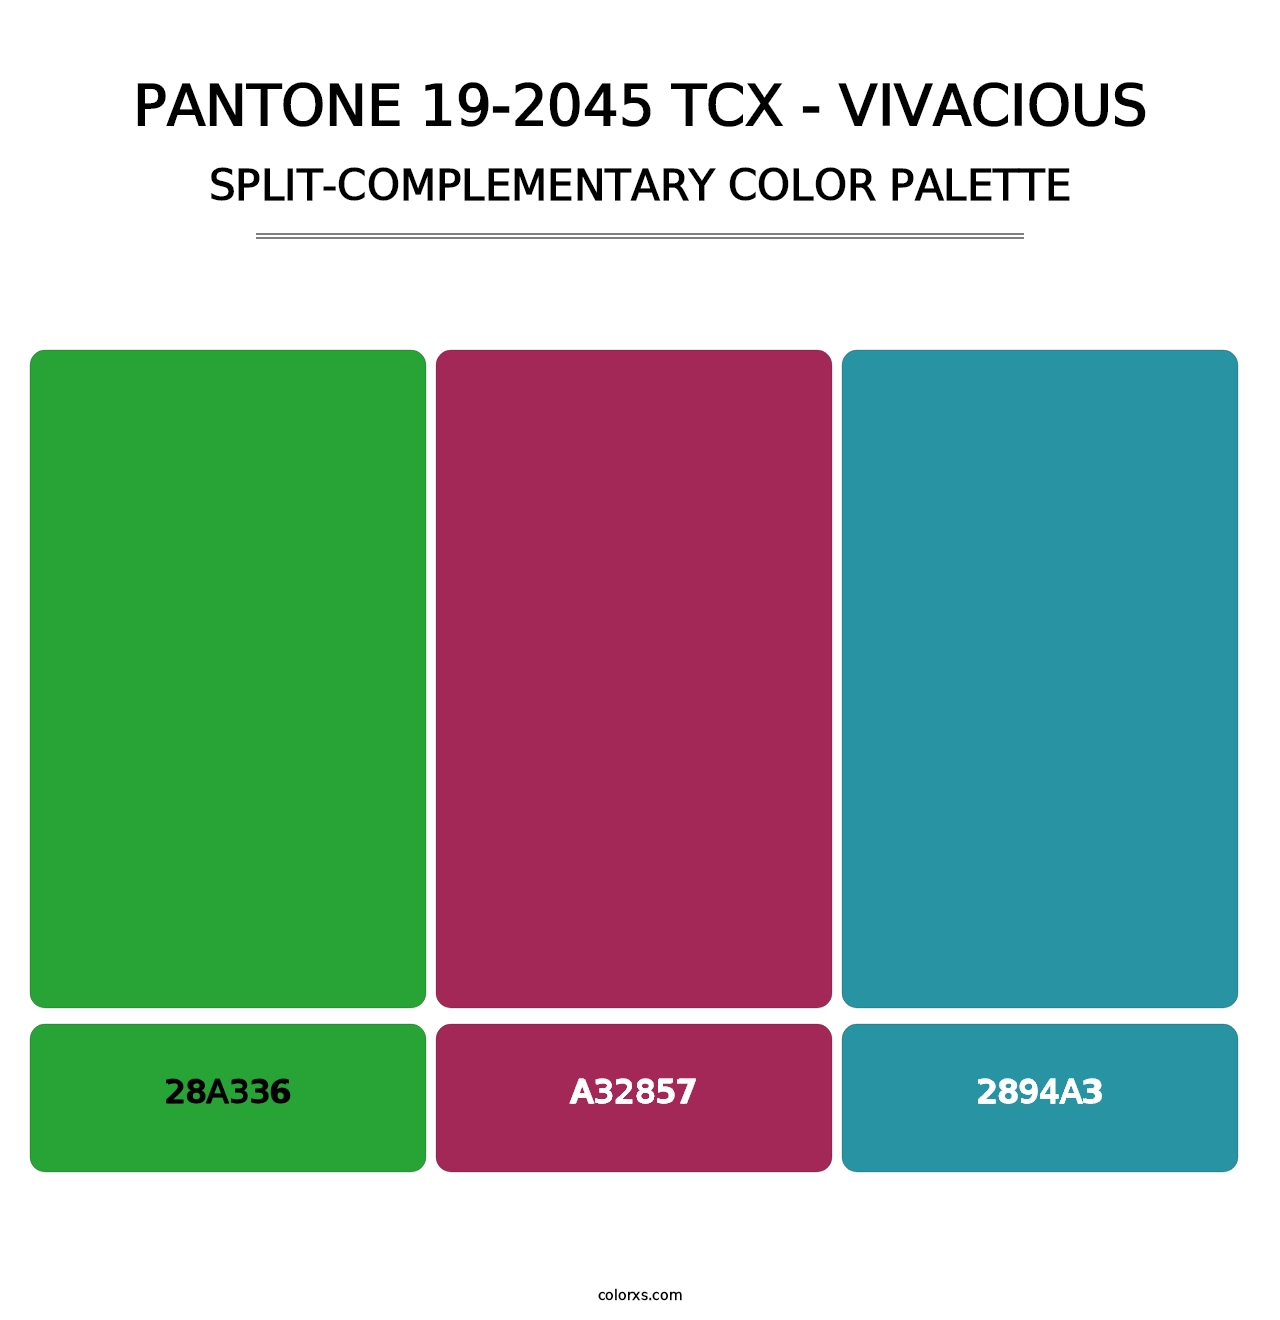 PANTONE 19-2045 TCX - Vivacious - Split-Complementary Color Palette